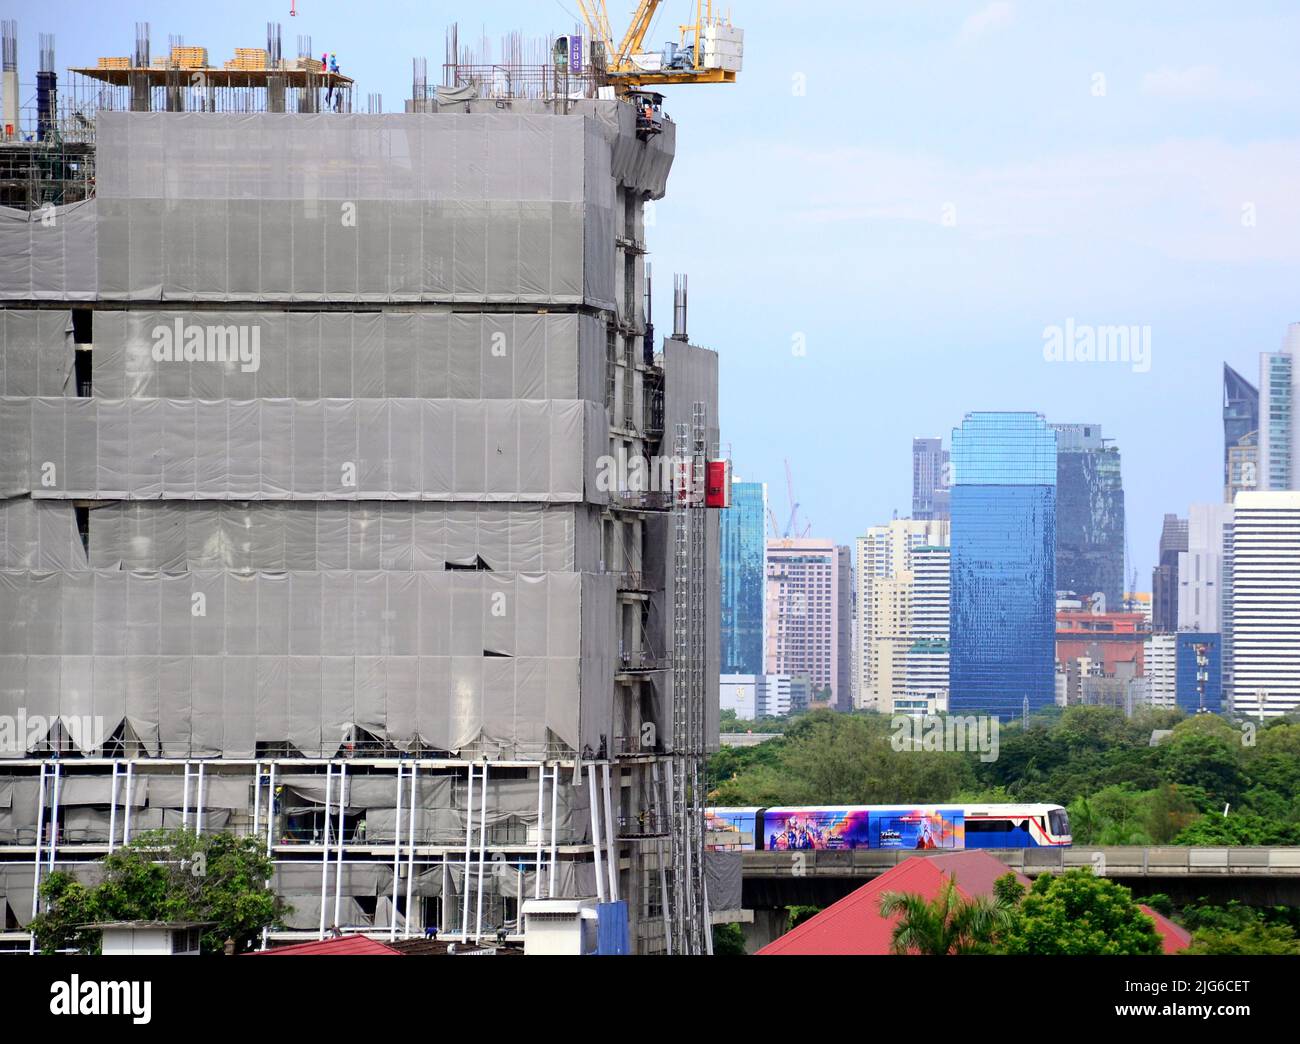 El horizonte de Bangkok se está transformando a medida que continúa el importante desarrollo inmobiliario en el centro de Bangkok, Tailandia, Asia, a pesar de la desaceleración causada por Covid 19. Foto de stock